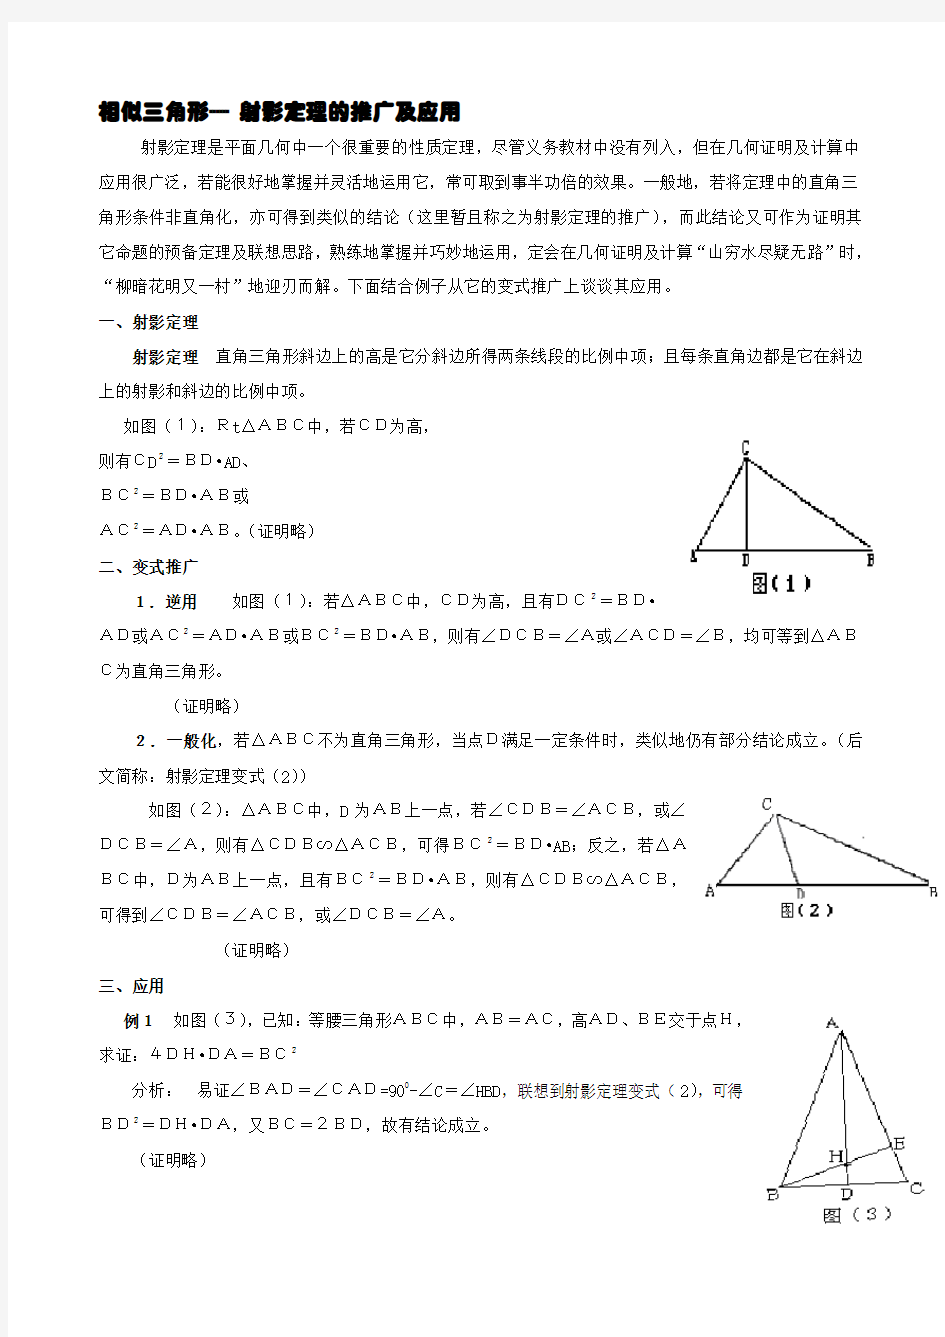 相似三角形---射影定理的运用